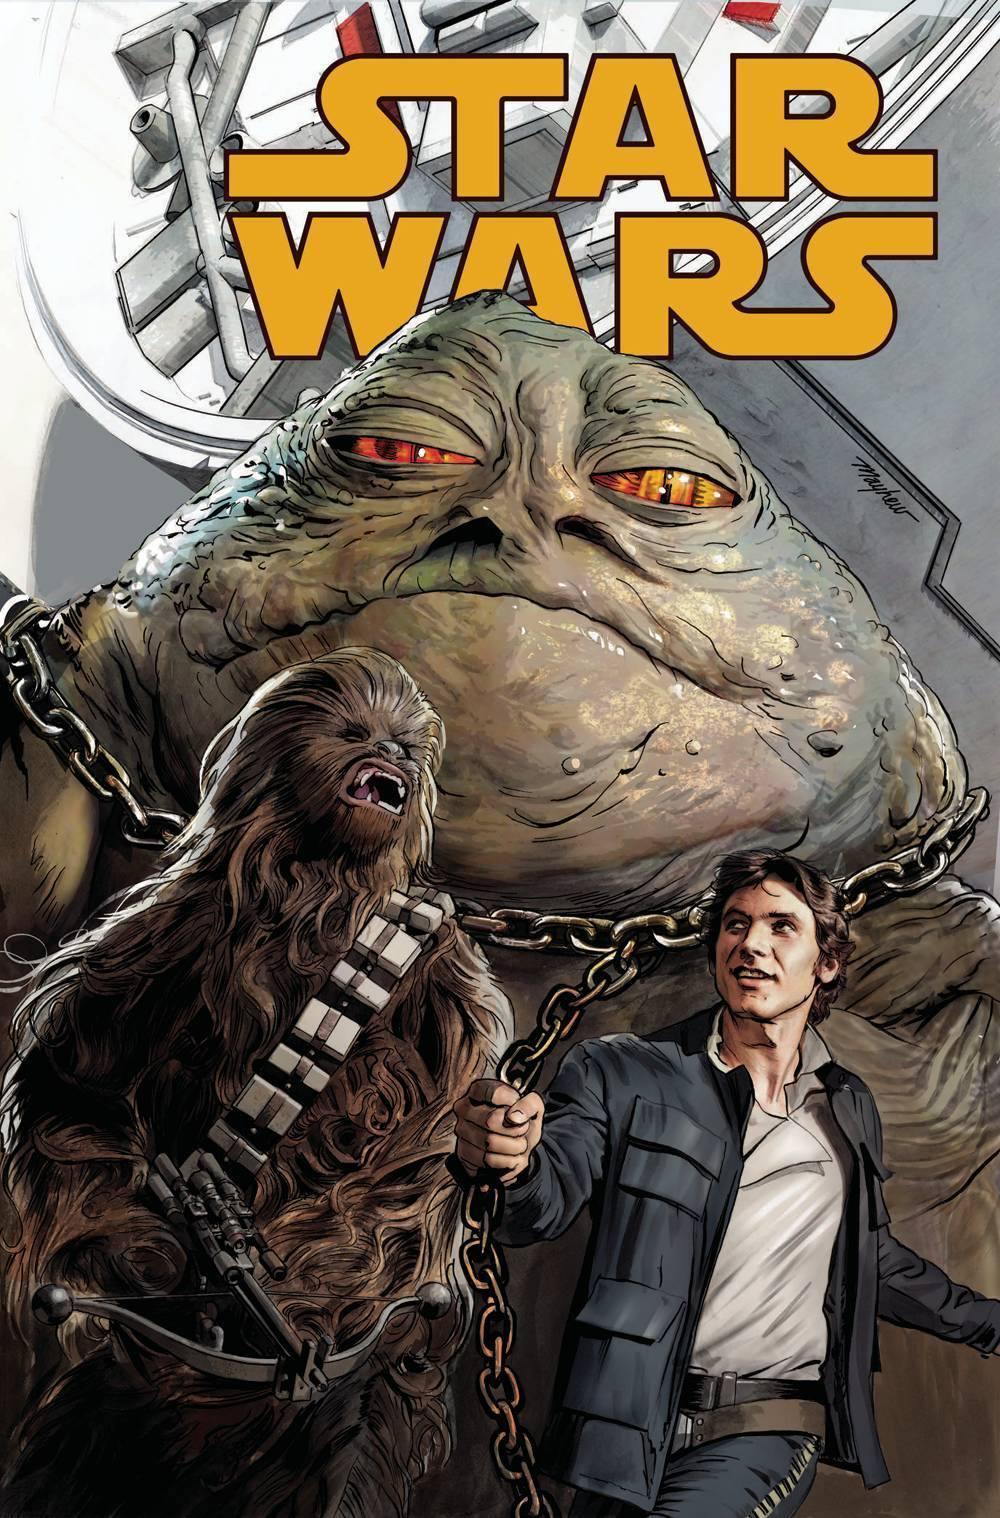 STAR WARS VOL 4 (2015) #35 - Kings Comics